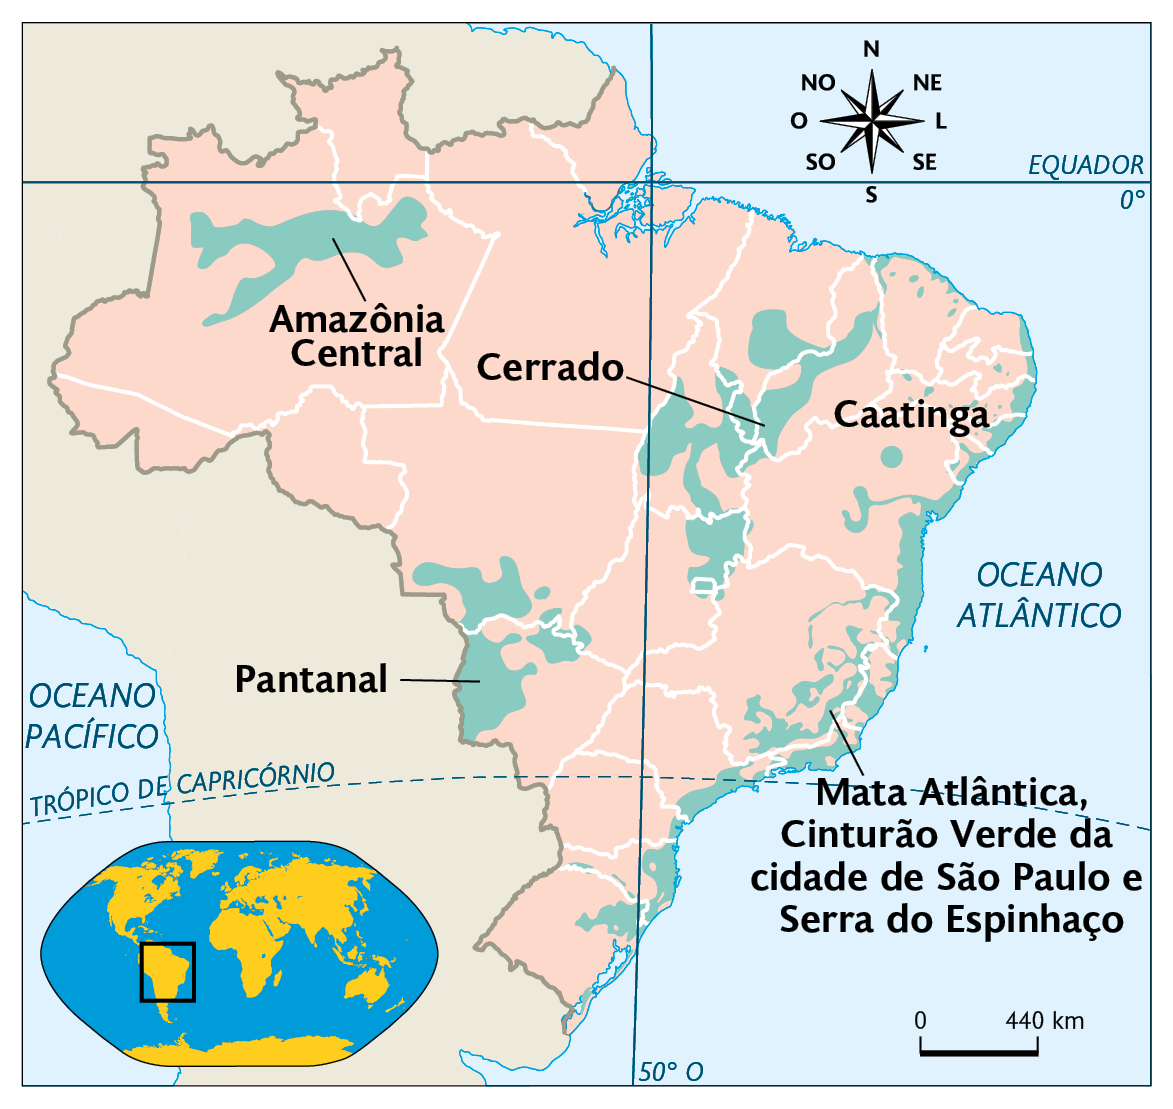 Mapa. Reservas da biosfera no Brasil (2020). 
Amazônia Central, no centro do Amazonas, Cerrado, em áreas dispersas entre Tocantins, Maranhão, Piauí e Goiás. Caatinga, área na região costeira do nordeste; Pantanal, no Mato Grosso e Mato Grosso do Sul; Mata Atlântica, Cinturão Verde da cidade de São Paulo e Serra do Espinhaço, área no leste da região sudeste e sul. No canto inferior esquerdo, mapa de localização, planisfério destacando a região descrita. No canto superior direito, a rosa dos ventos, na parte inferior, a escala: 440 quilômetros por centímetro.